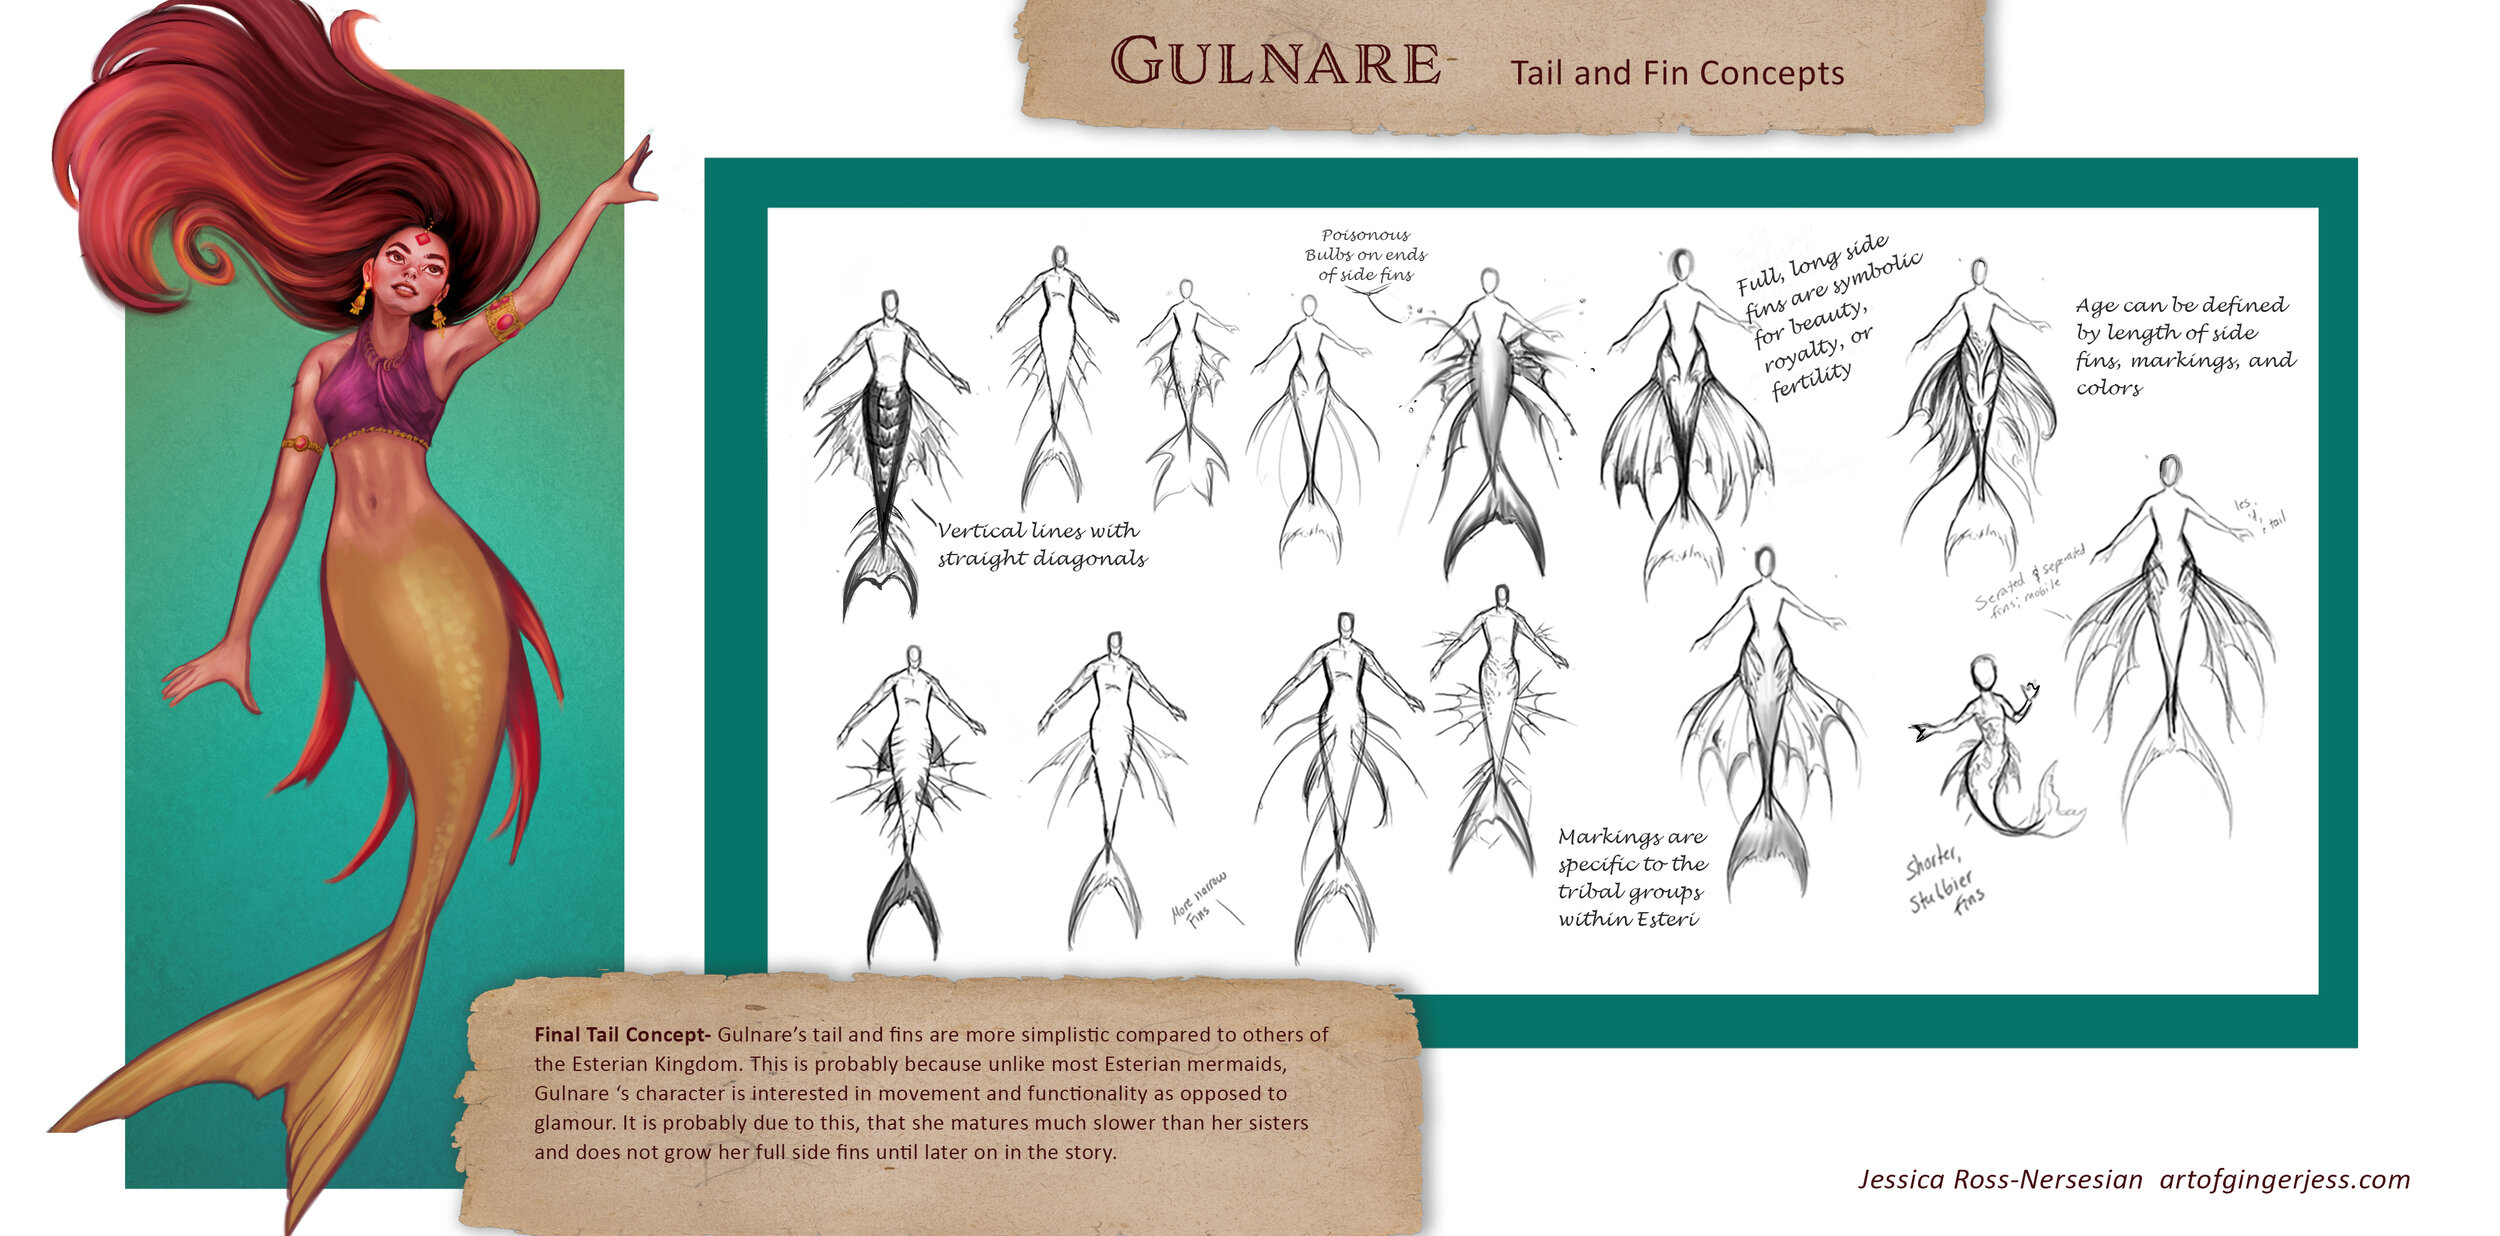 Gulnare - Fin concepts